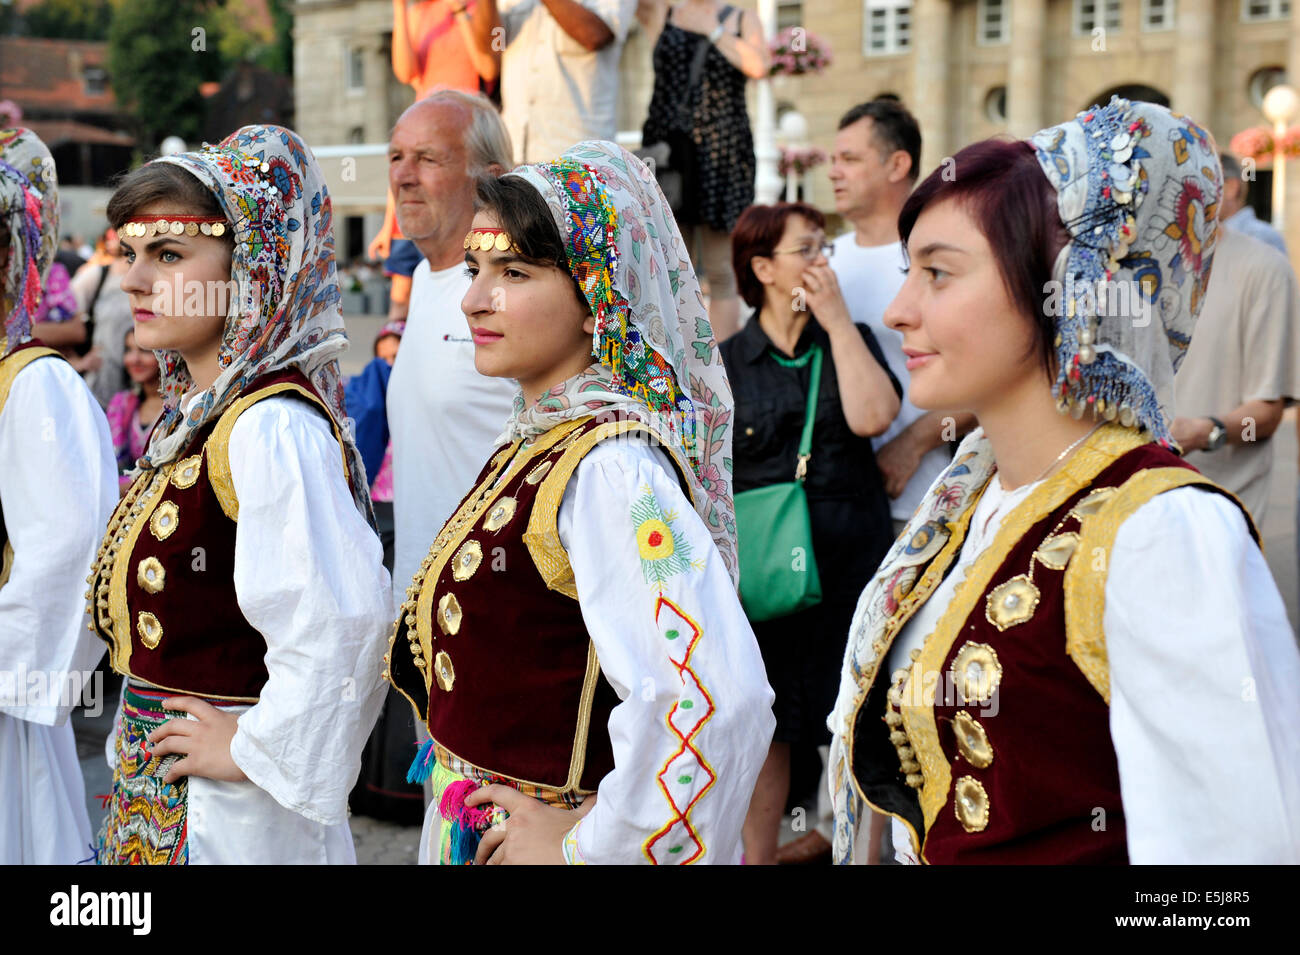 Mitglieder der Folk Gruppe albanische Kultur Gesellschaft aus Cegrane, Mazedonien während der 48. internationalen Folklore-Festival in Zagreb Stockfoto